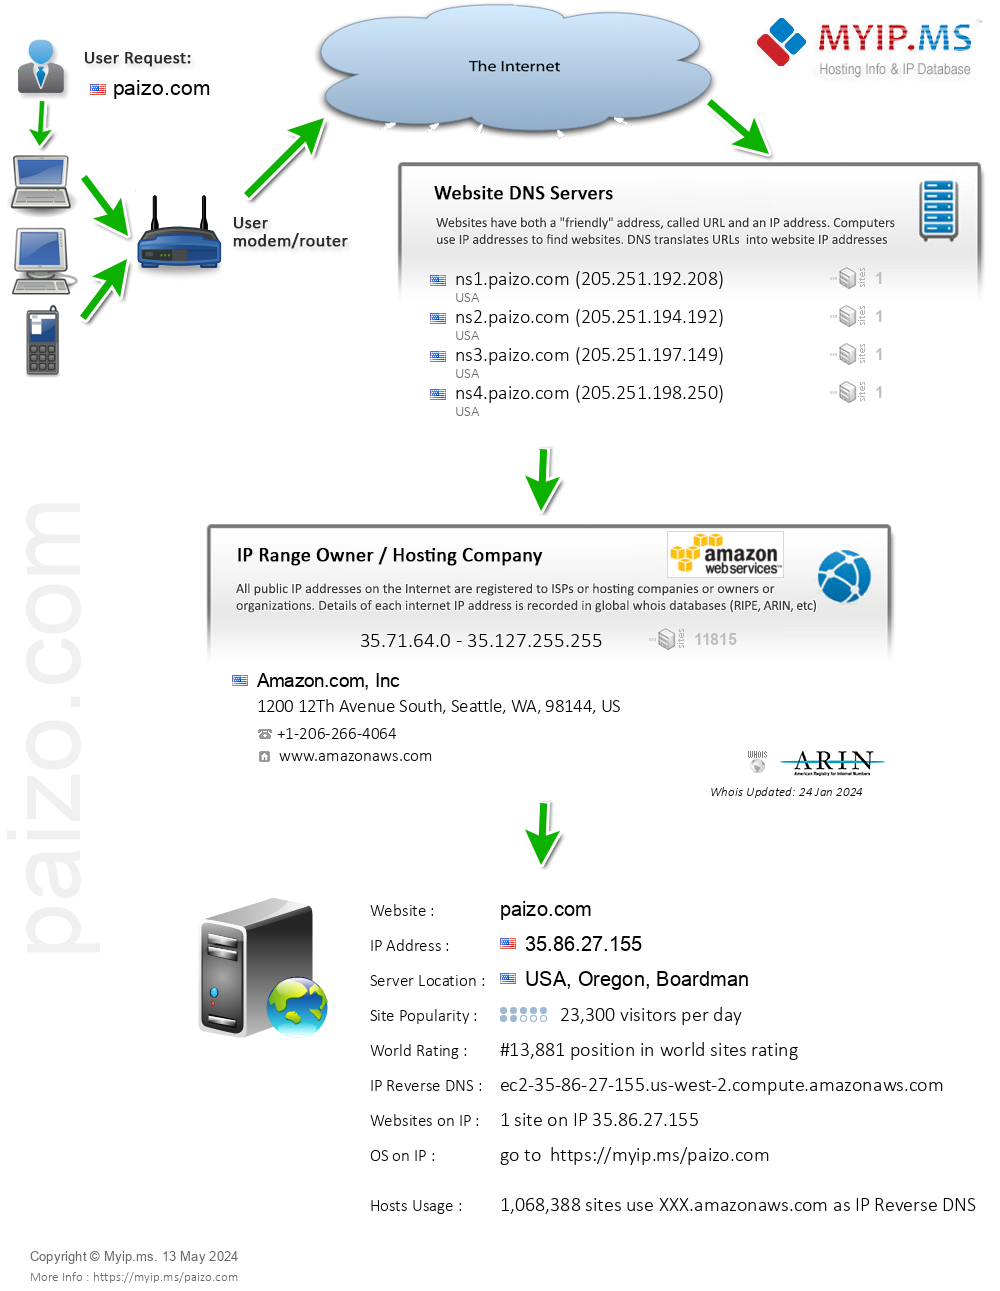 Paizo.com - Website Hosting Visual IP Diagram